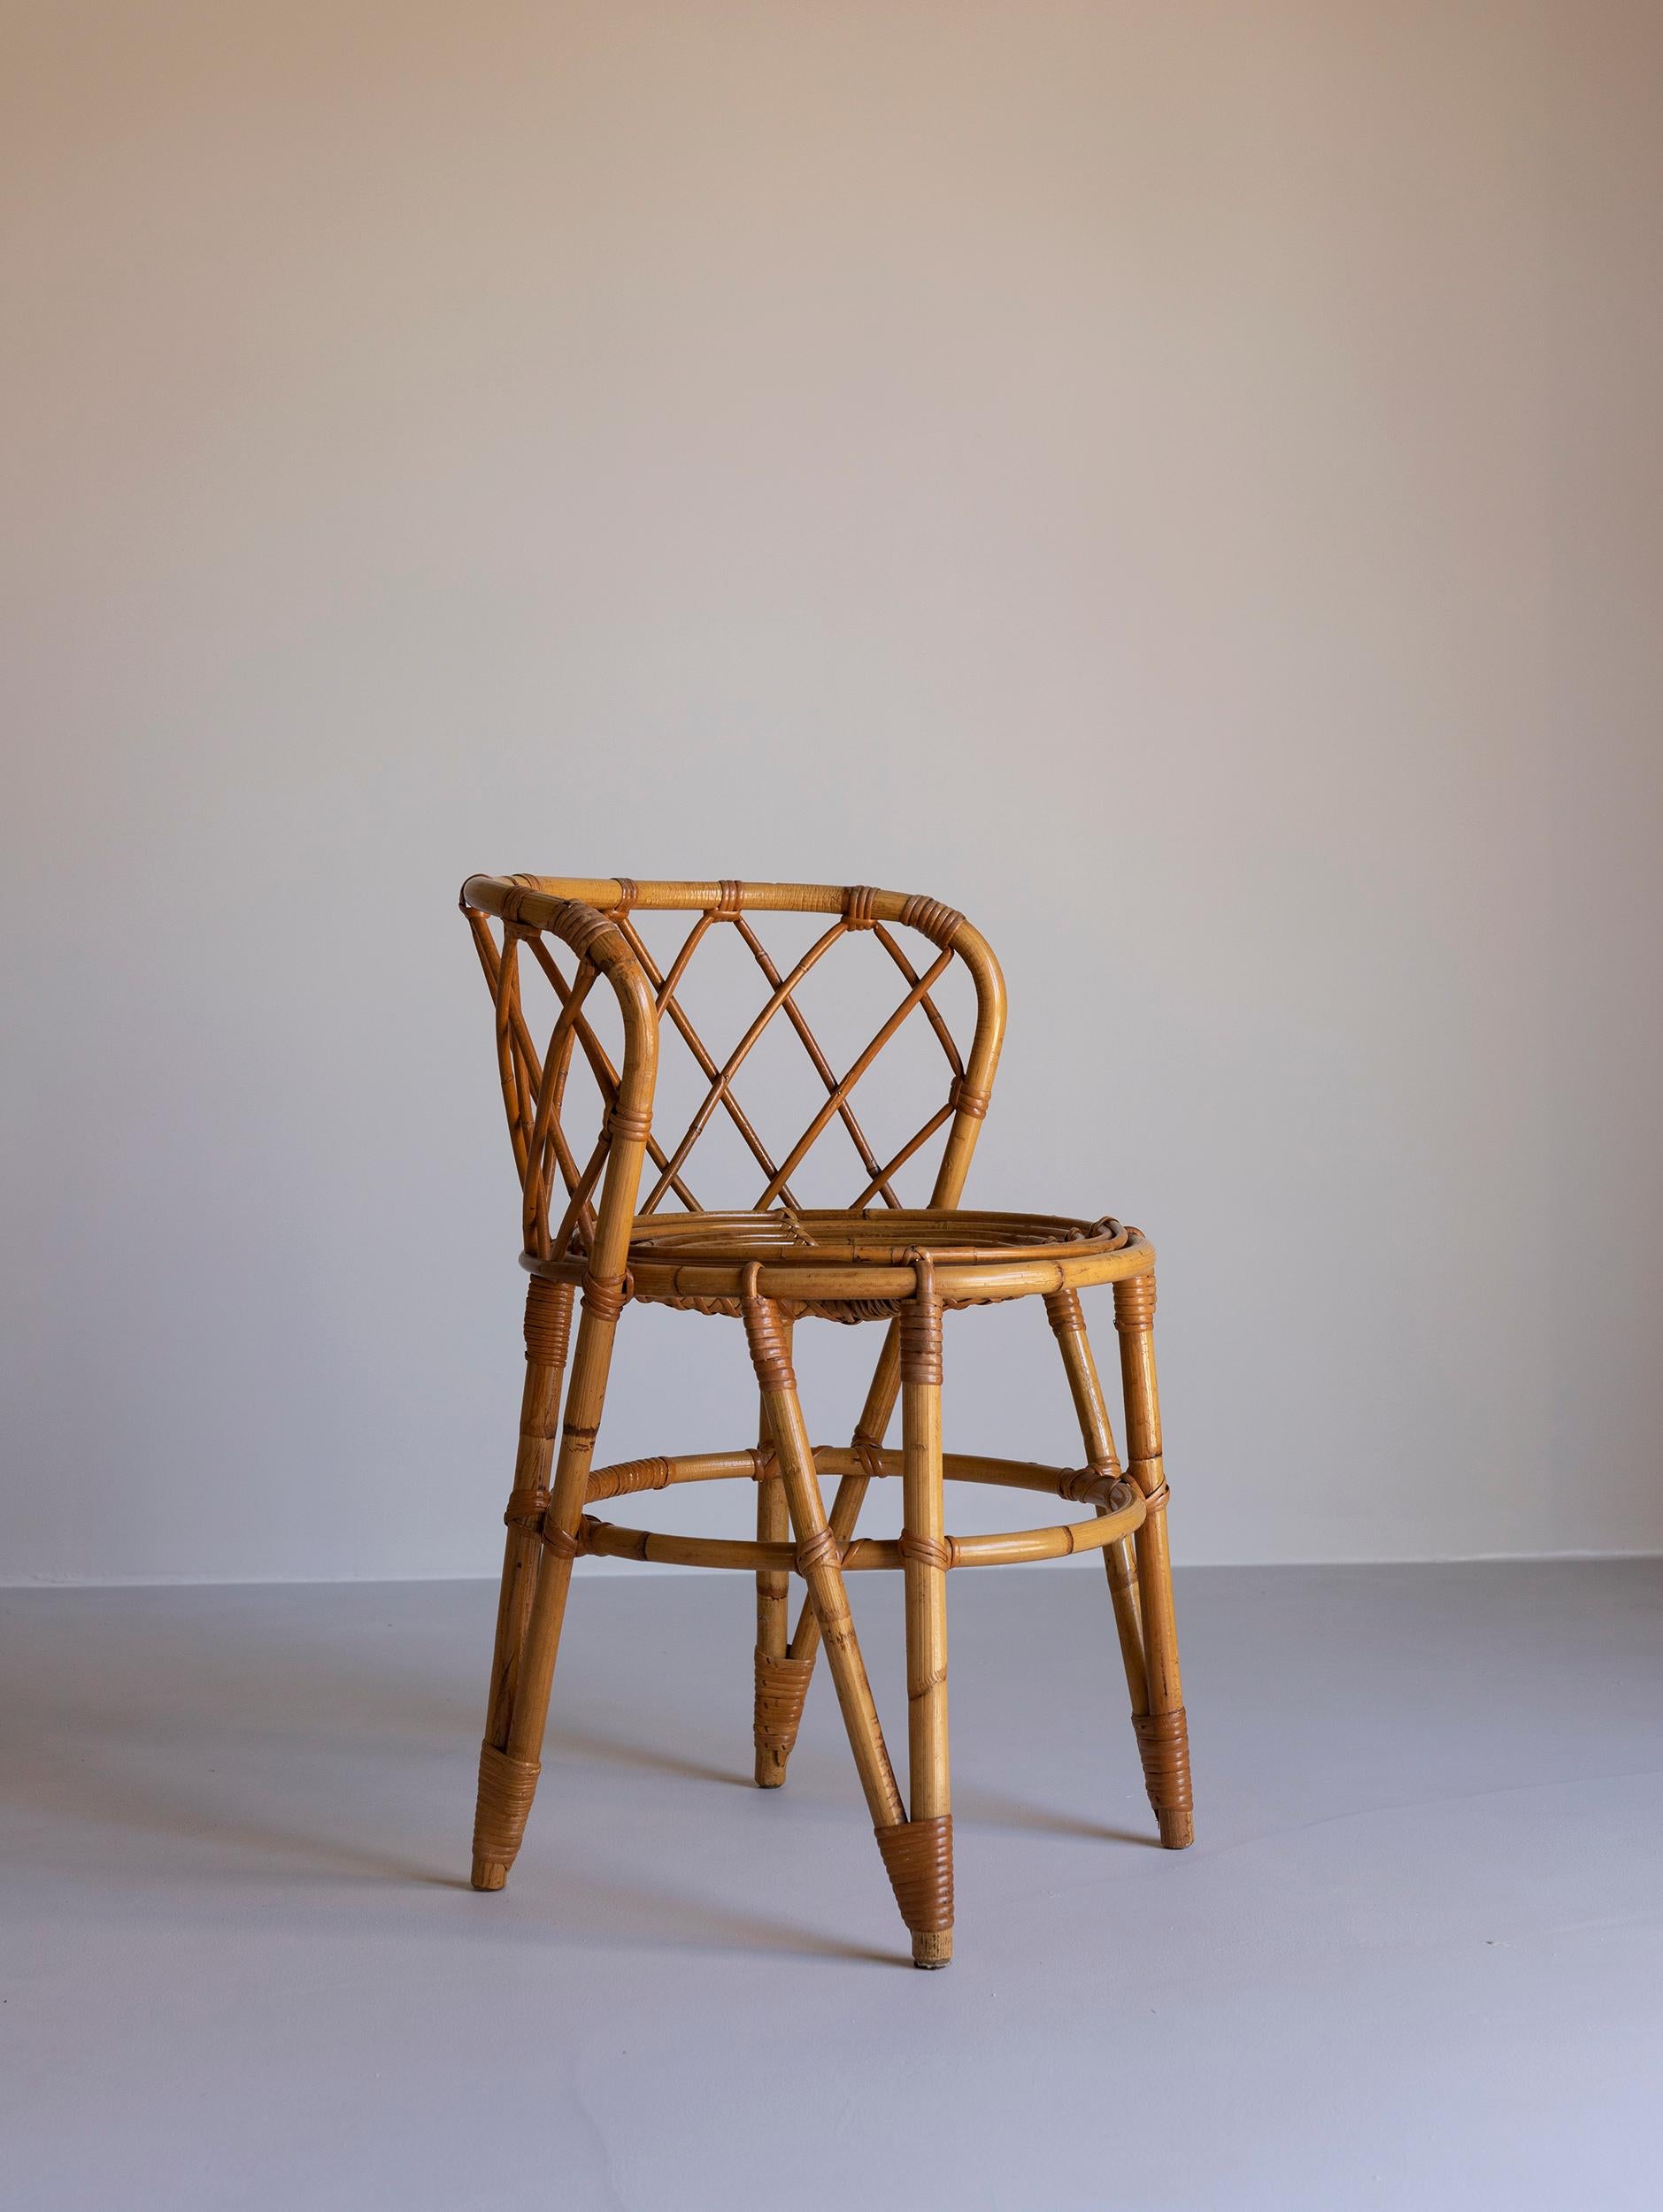 Belle chaise en rotin fabriquée en France
Design avec une touche de Louis Sognot.